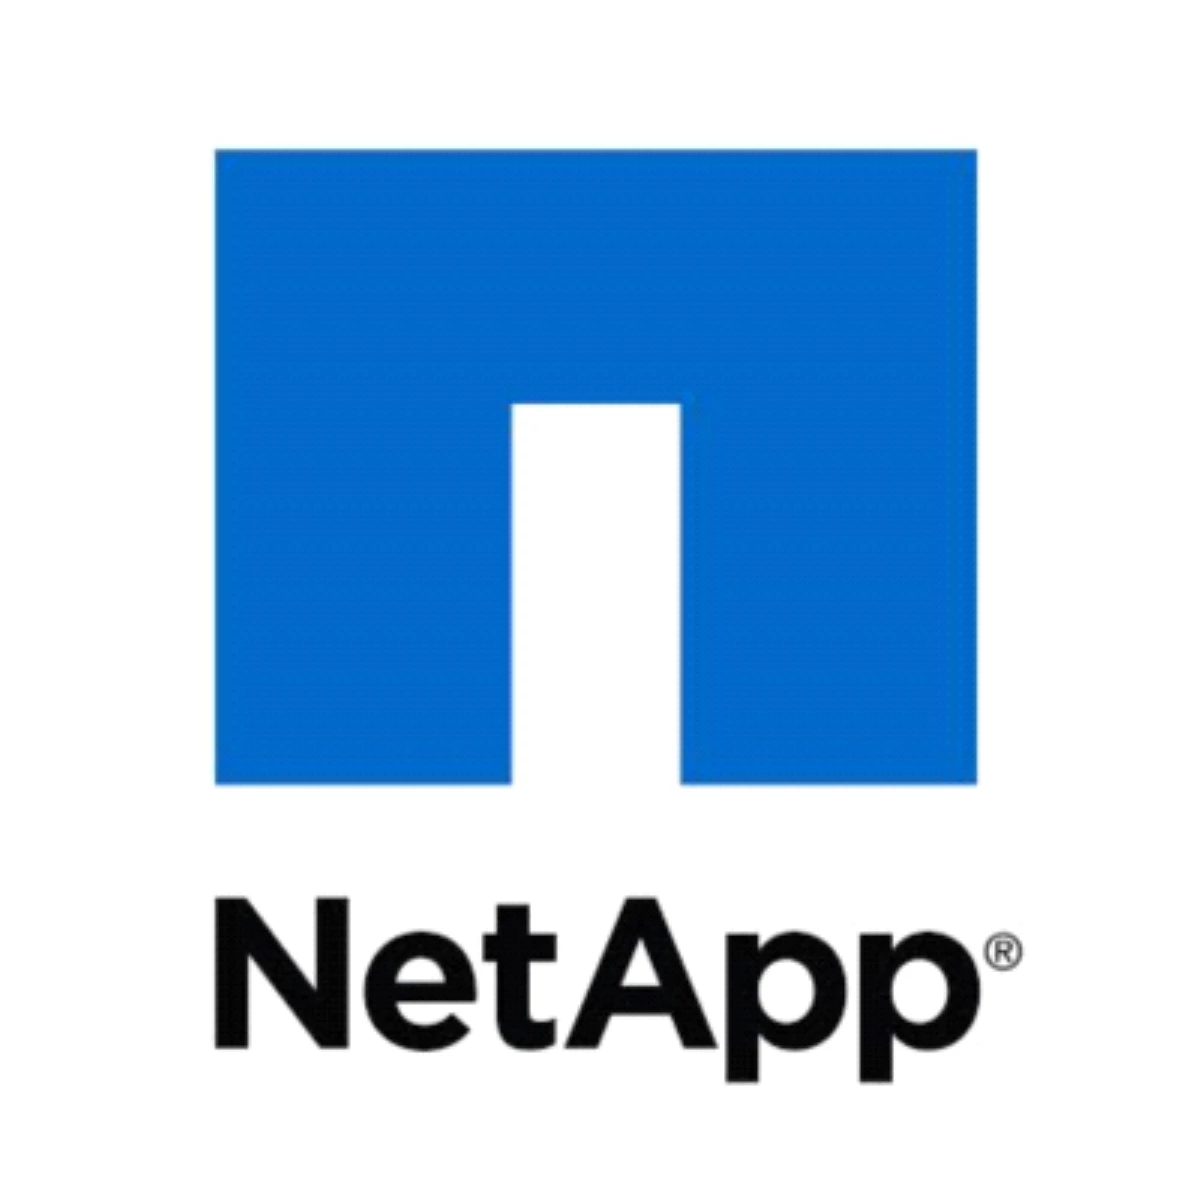 Netapp 2014 Öngörülerini Açıkladı